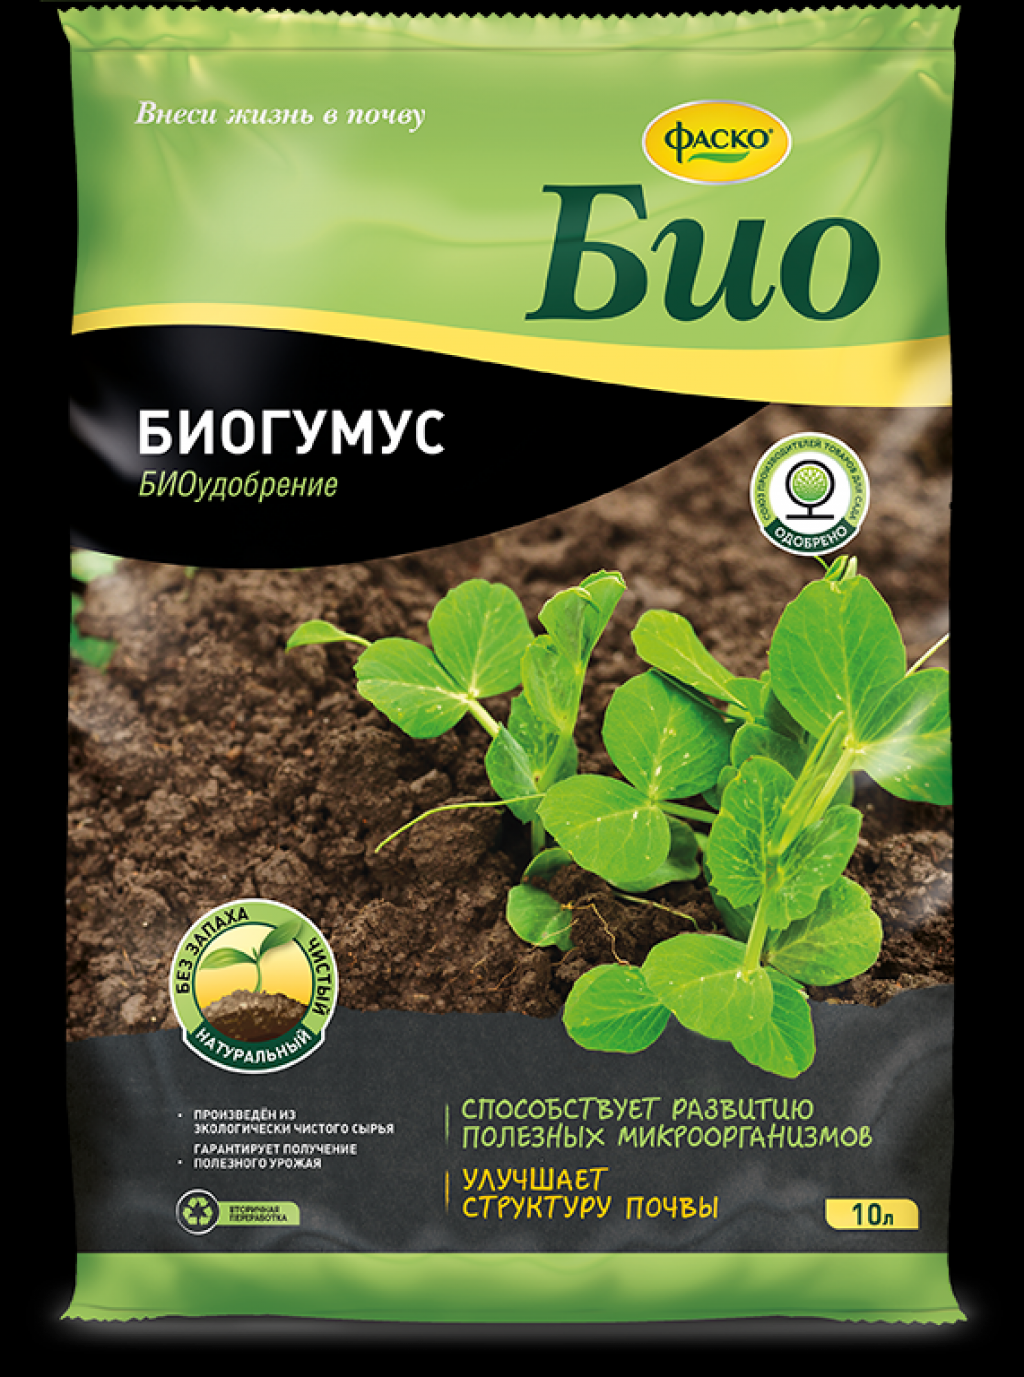 Как использовать биогумус - инструкция применения для растений